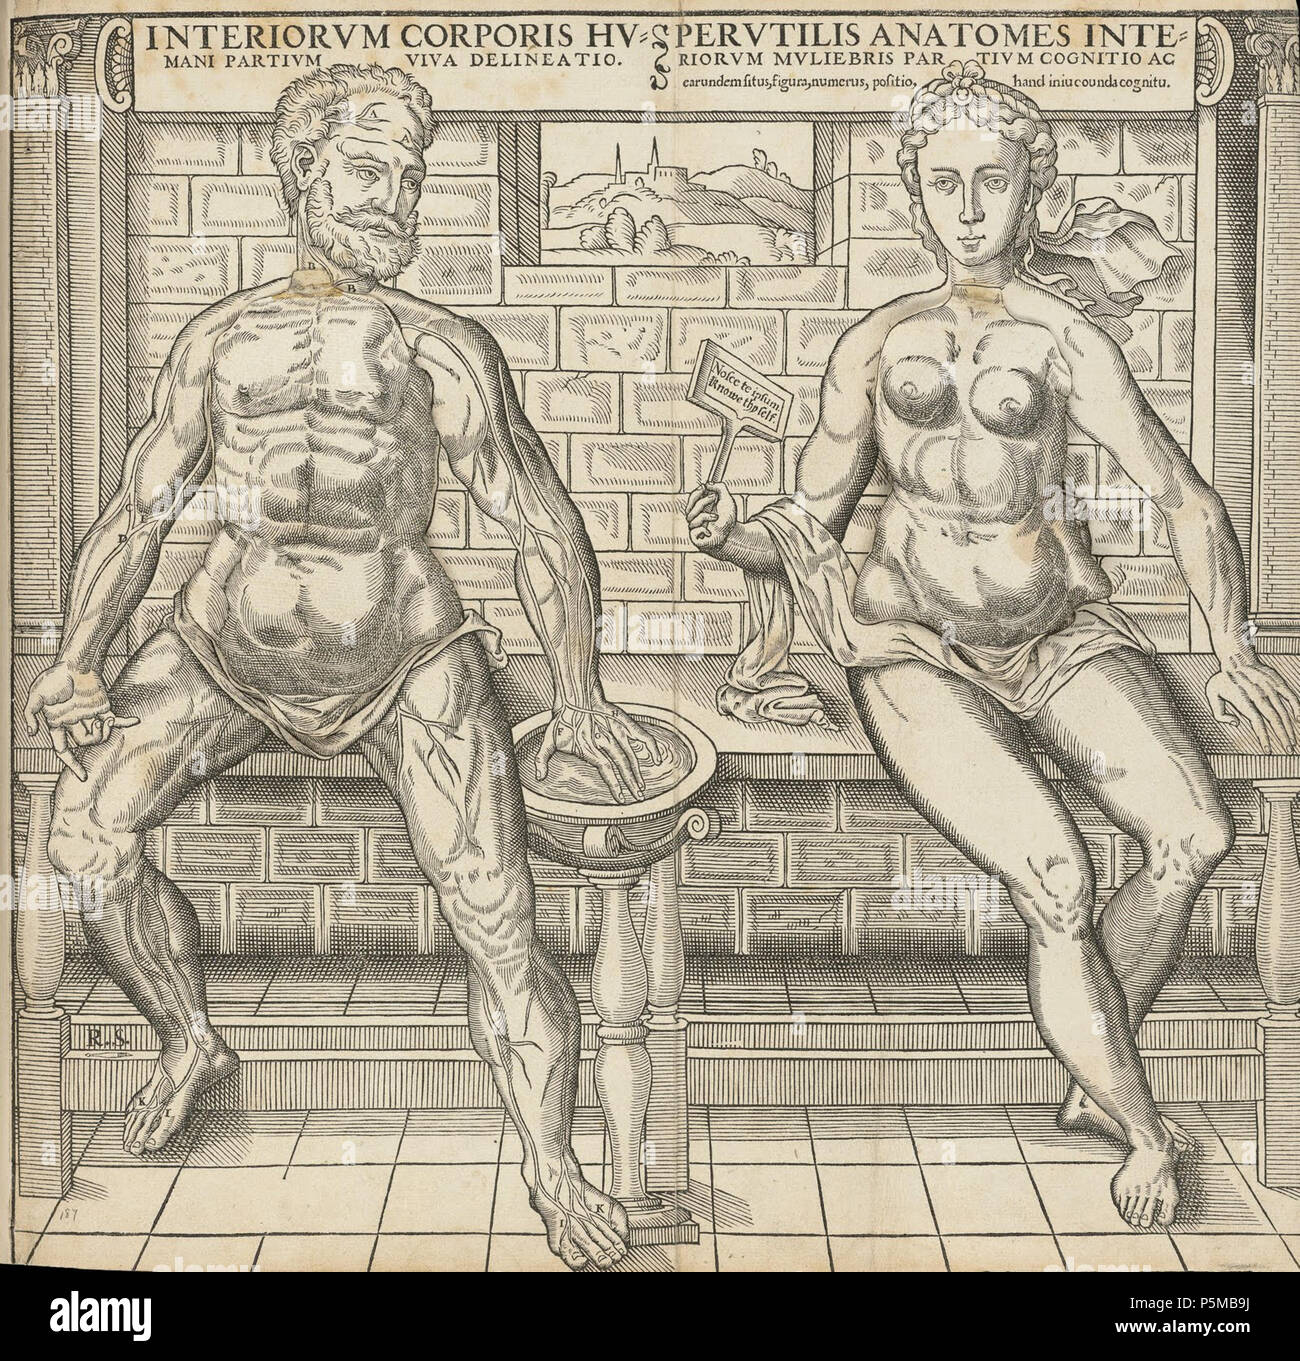 N/A. Inglés: Hoja fugitivo anatómica representando el cuerpo humano en distintas fases de disección . circa 1538. Gyles godet (-c1571) y posiblemente Thomas Geminus (-1562) después Vesalio 97 hoja anatómicos00 Foto de stock